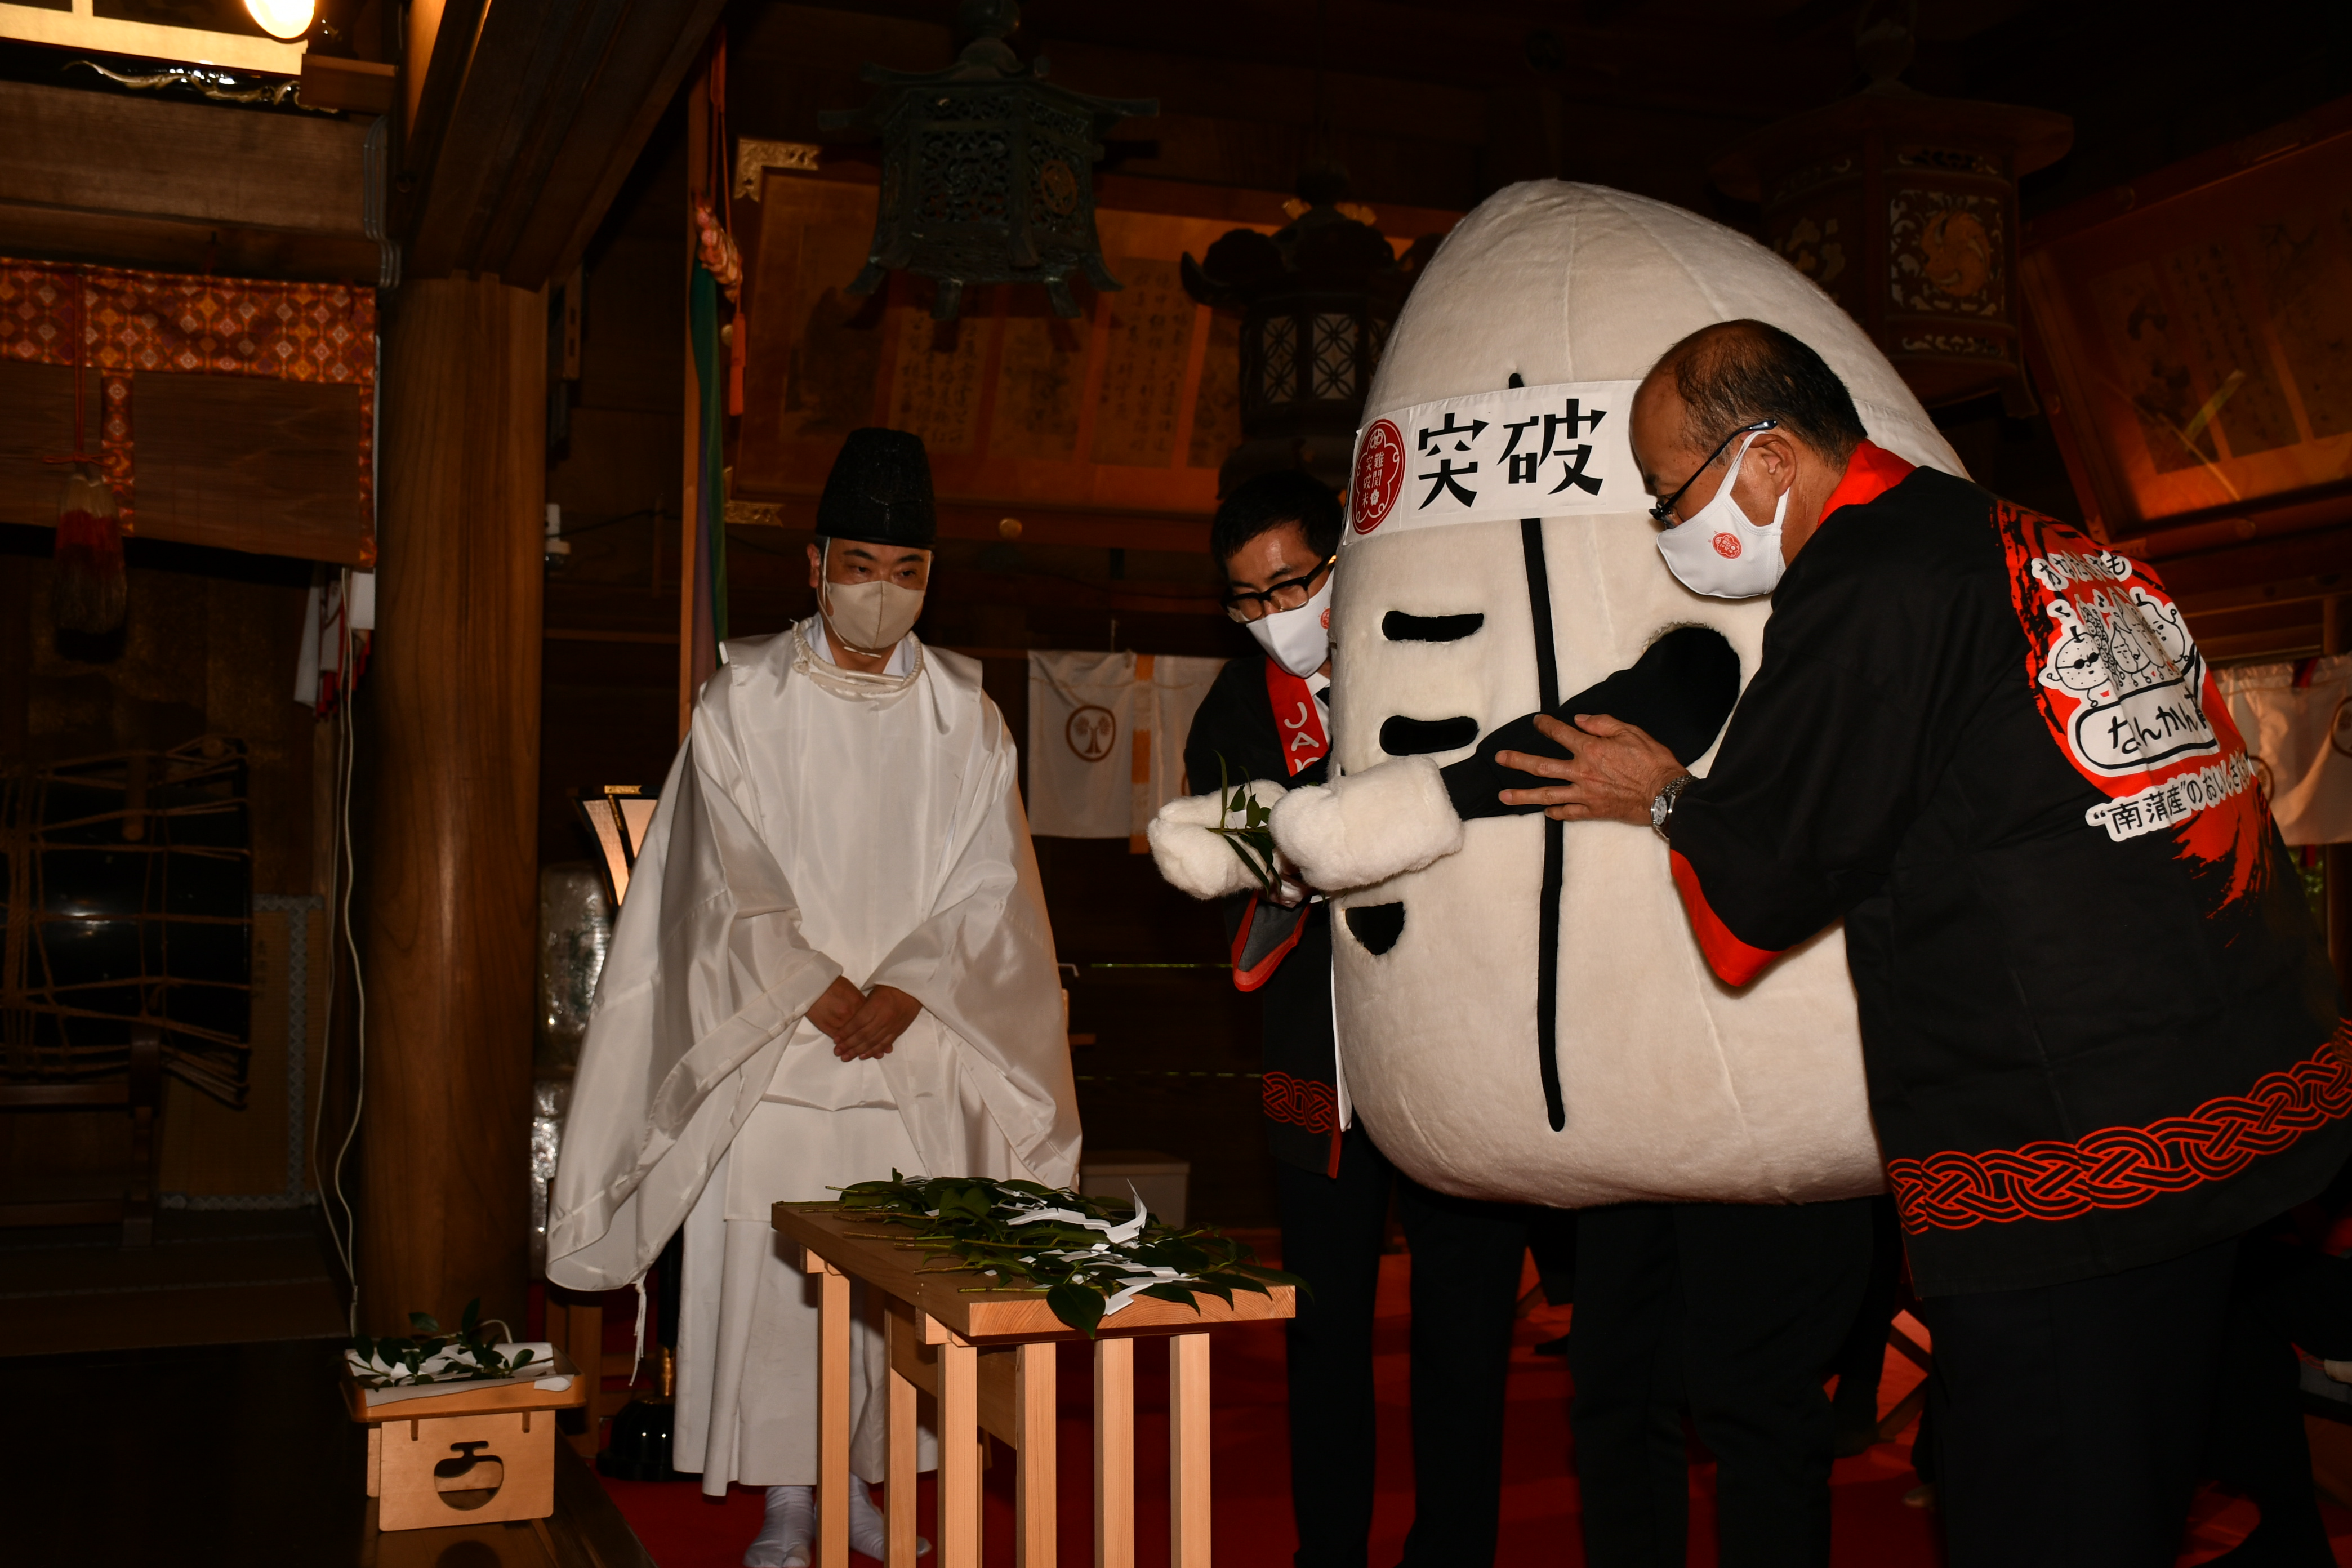 １０月３日に行われた神事におけるオリジナルキャラクター「飯太郎」